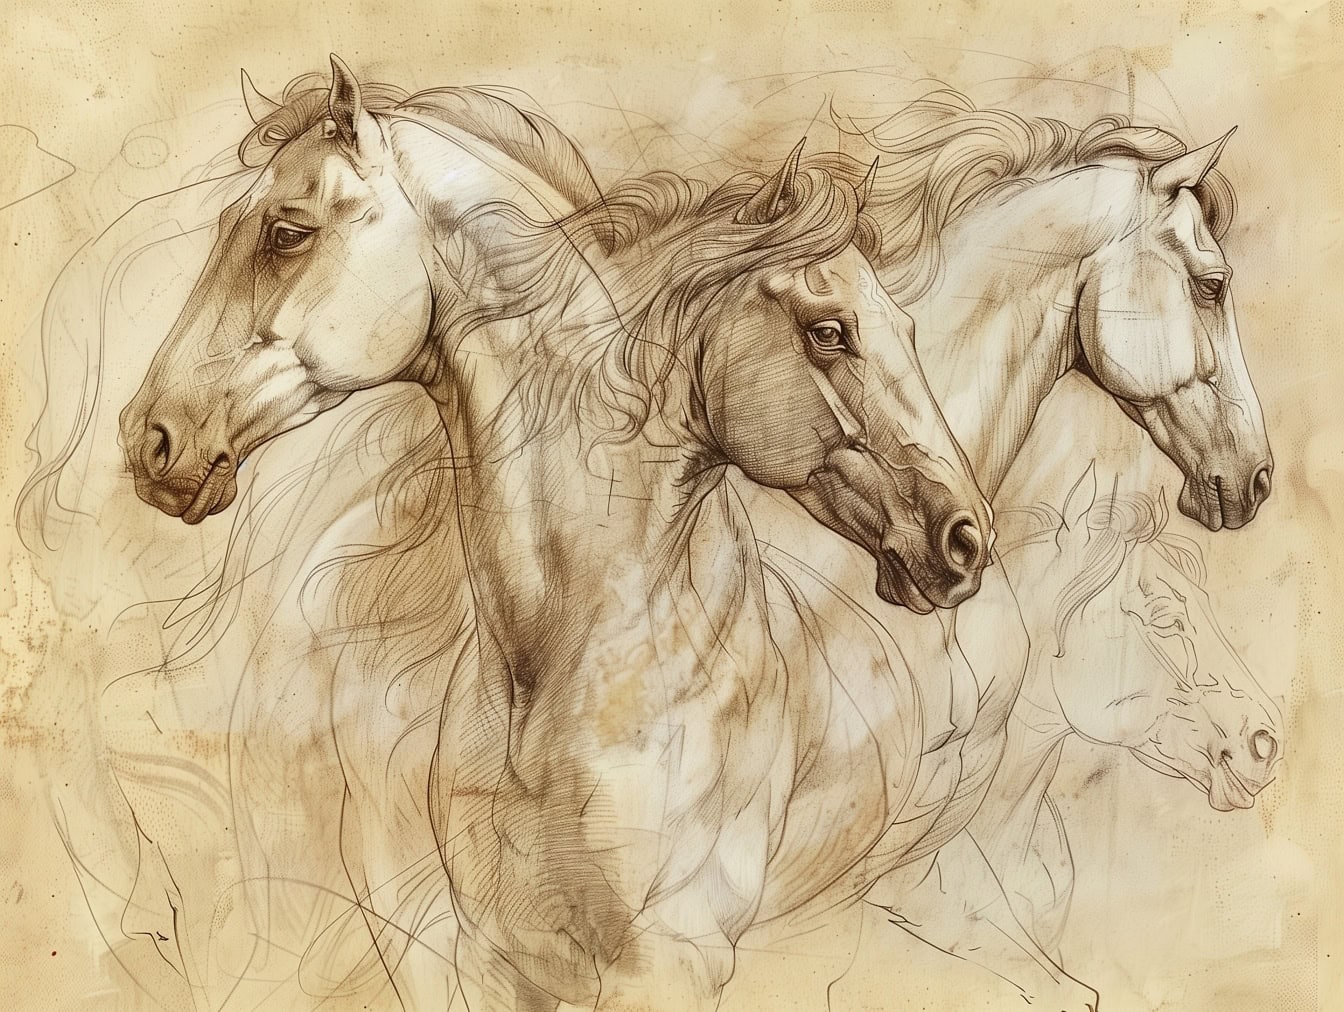 Un boceto inacabado de varios caballos sobre papel marrón amarillento descolorido, que recuerda a la obra de arte de un artista medieval